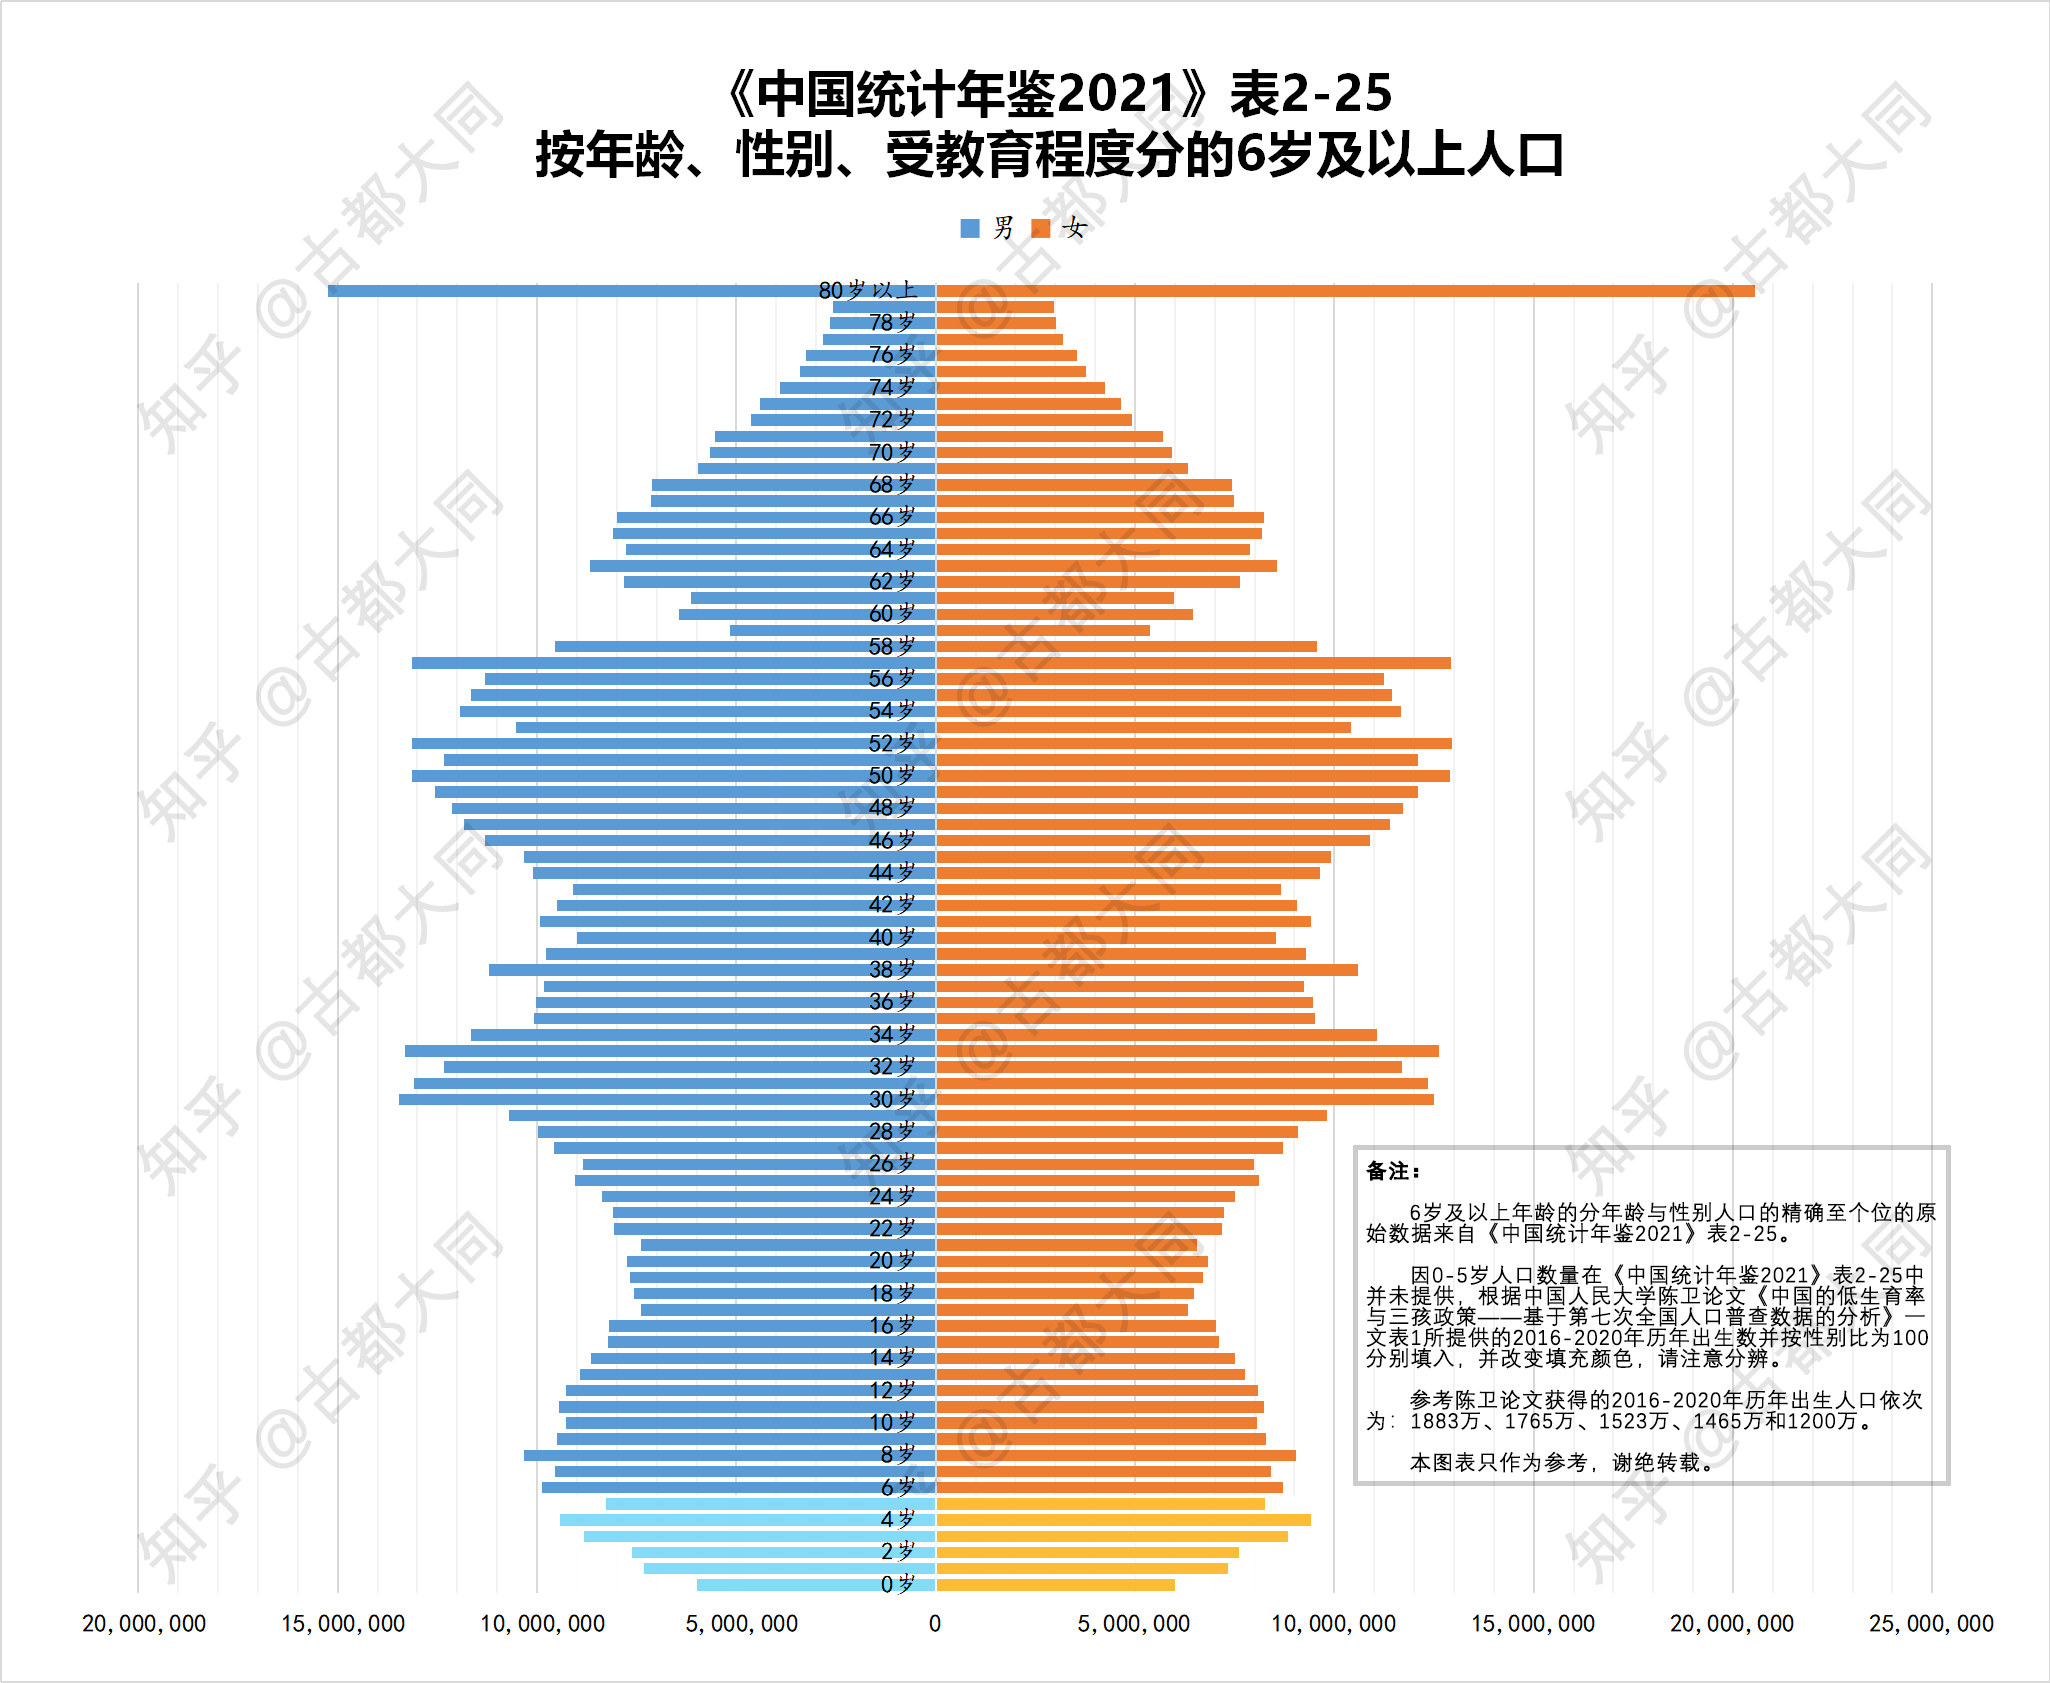 2050年中国人口结构图图片